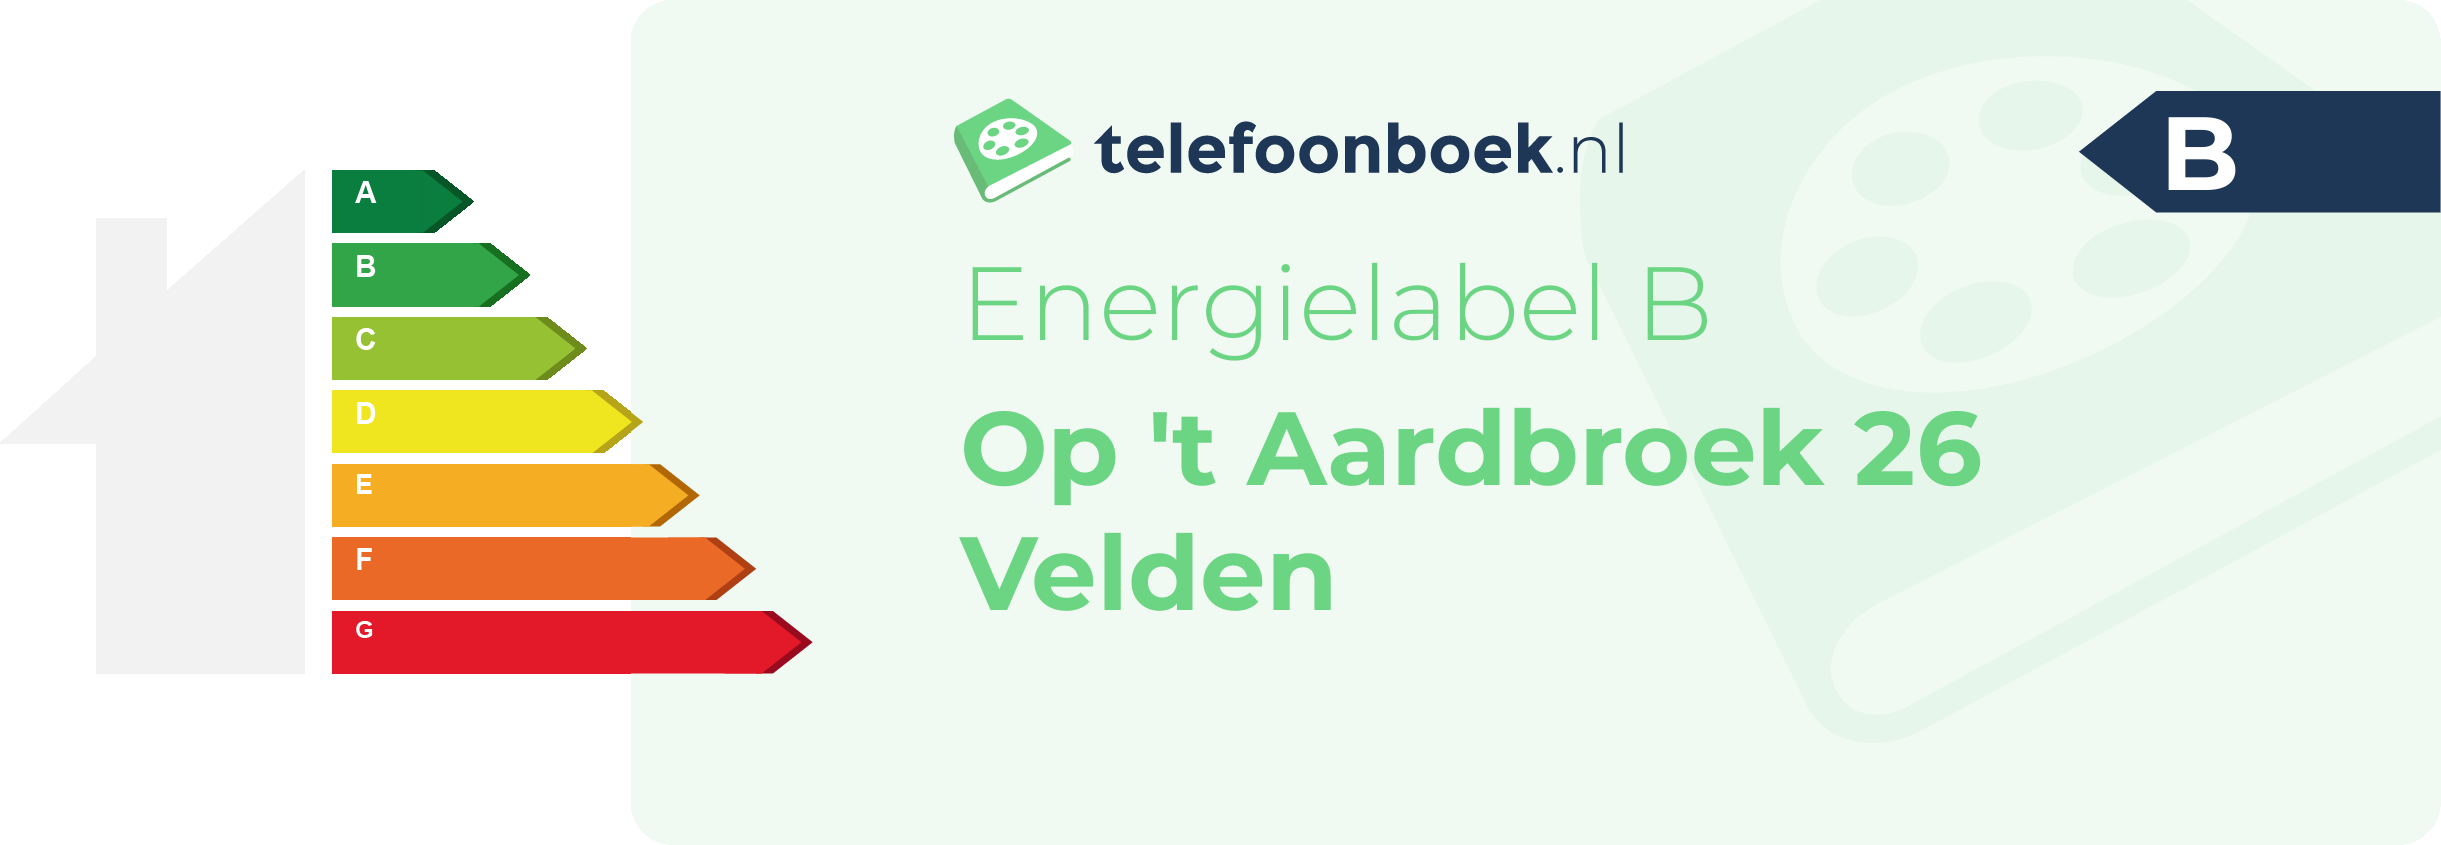 Energielabel Op 't Aardbroek 26 Velden